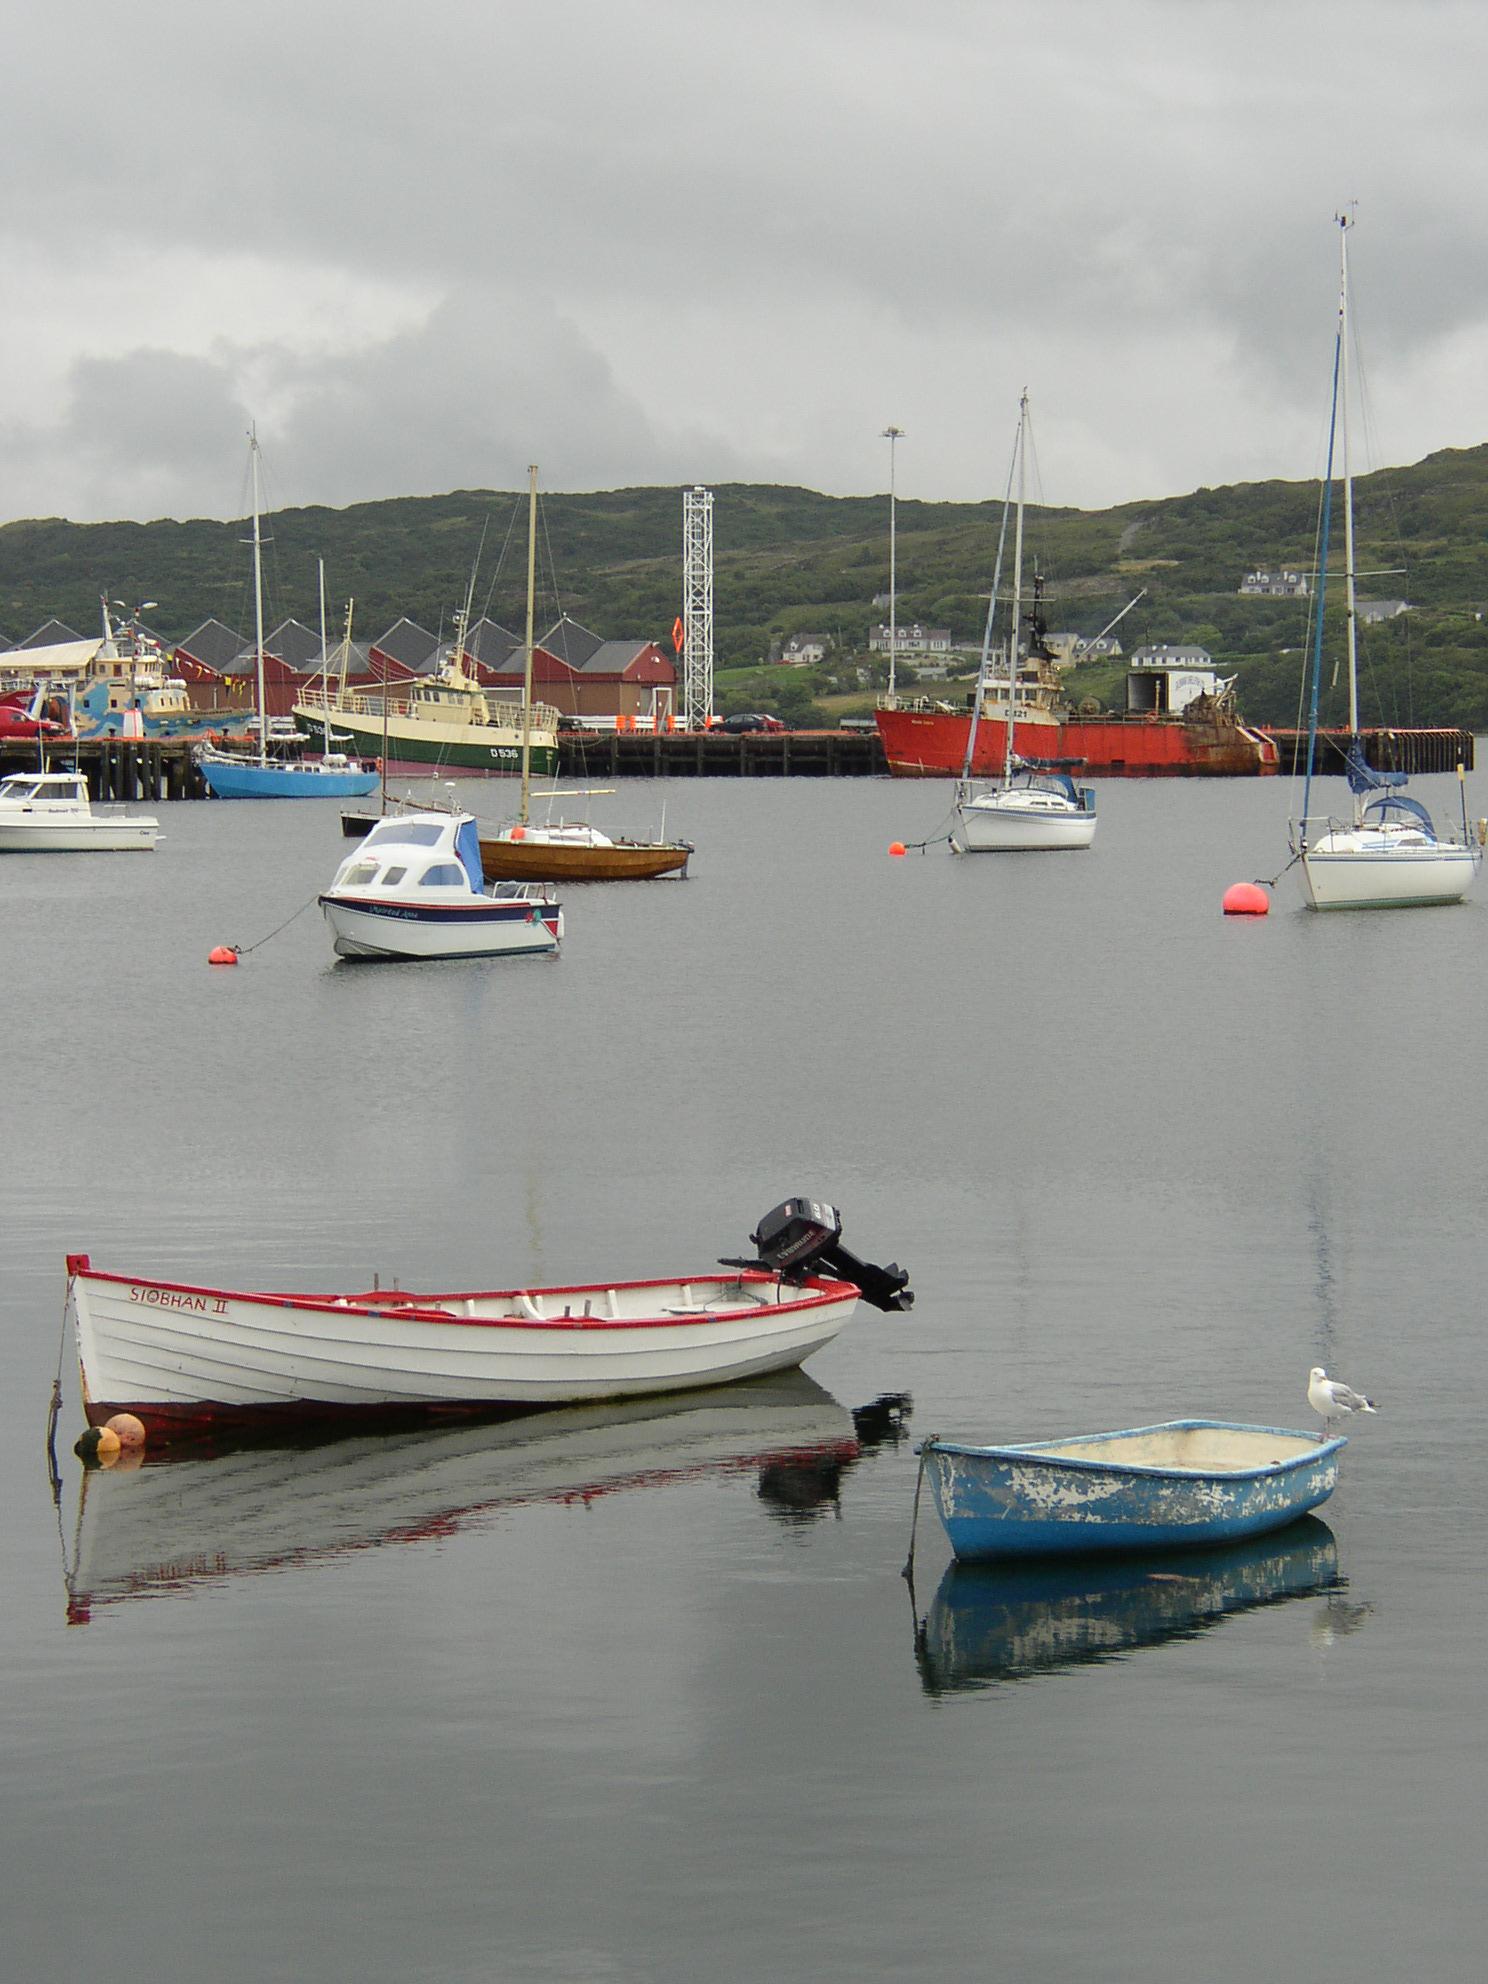 Irsko
Tradiční rybářské zátiší v městečku Killybegs, hrabství Donegal